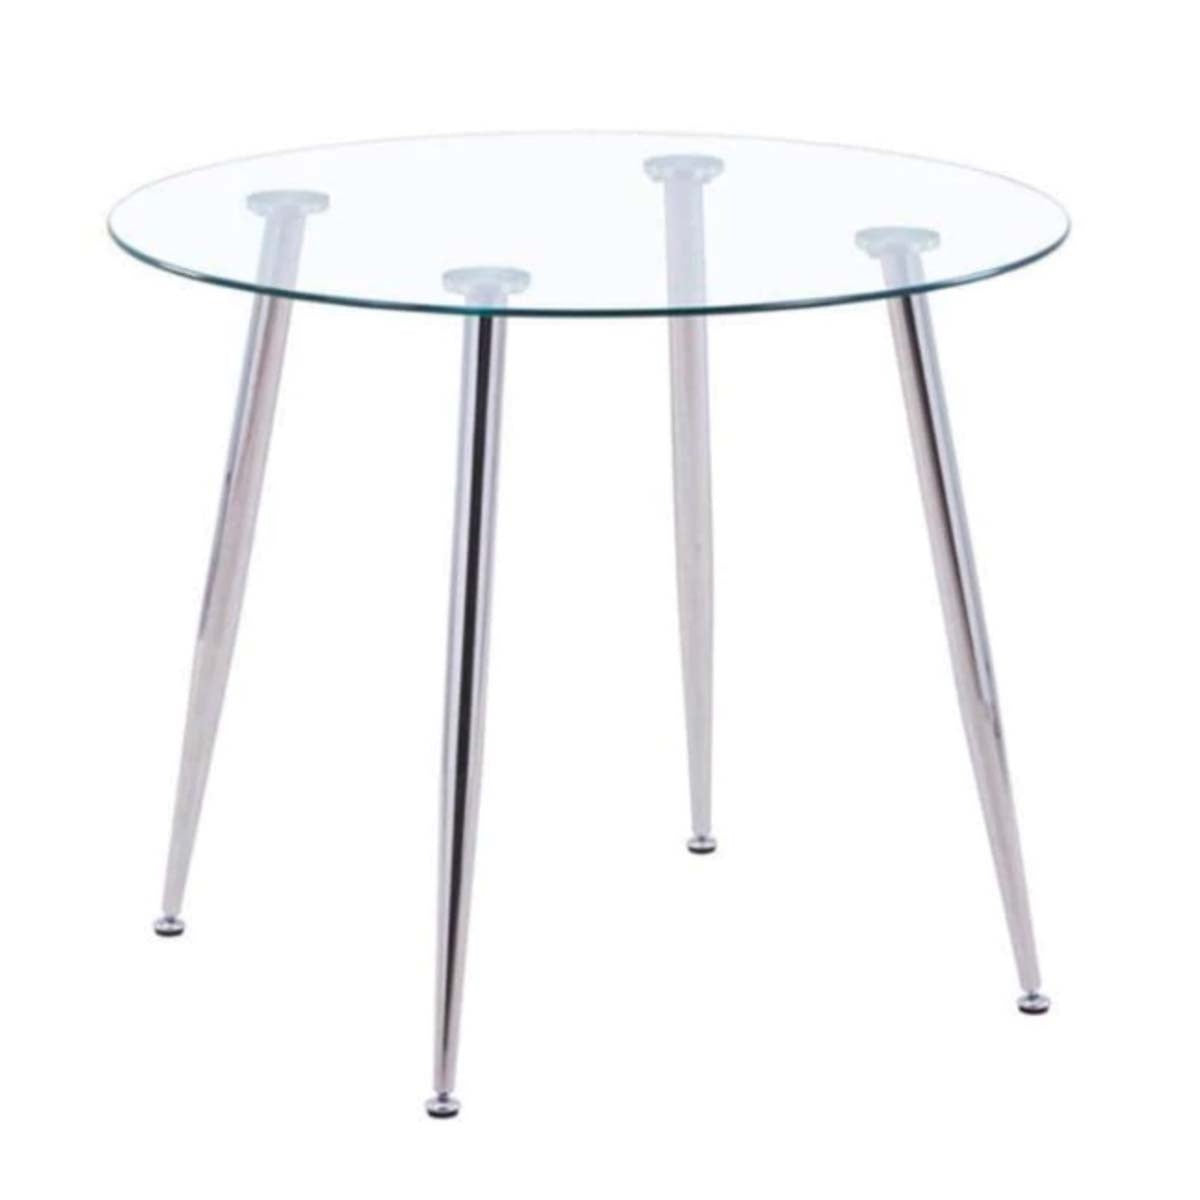 Glass Dining Table - Chromed Legs